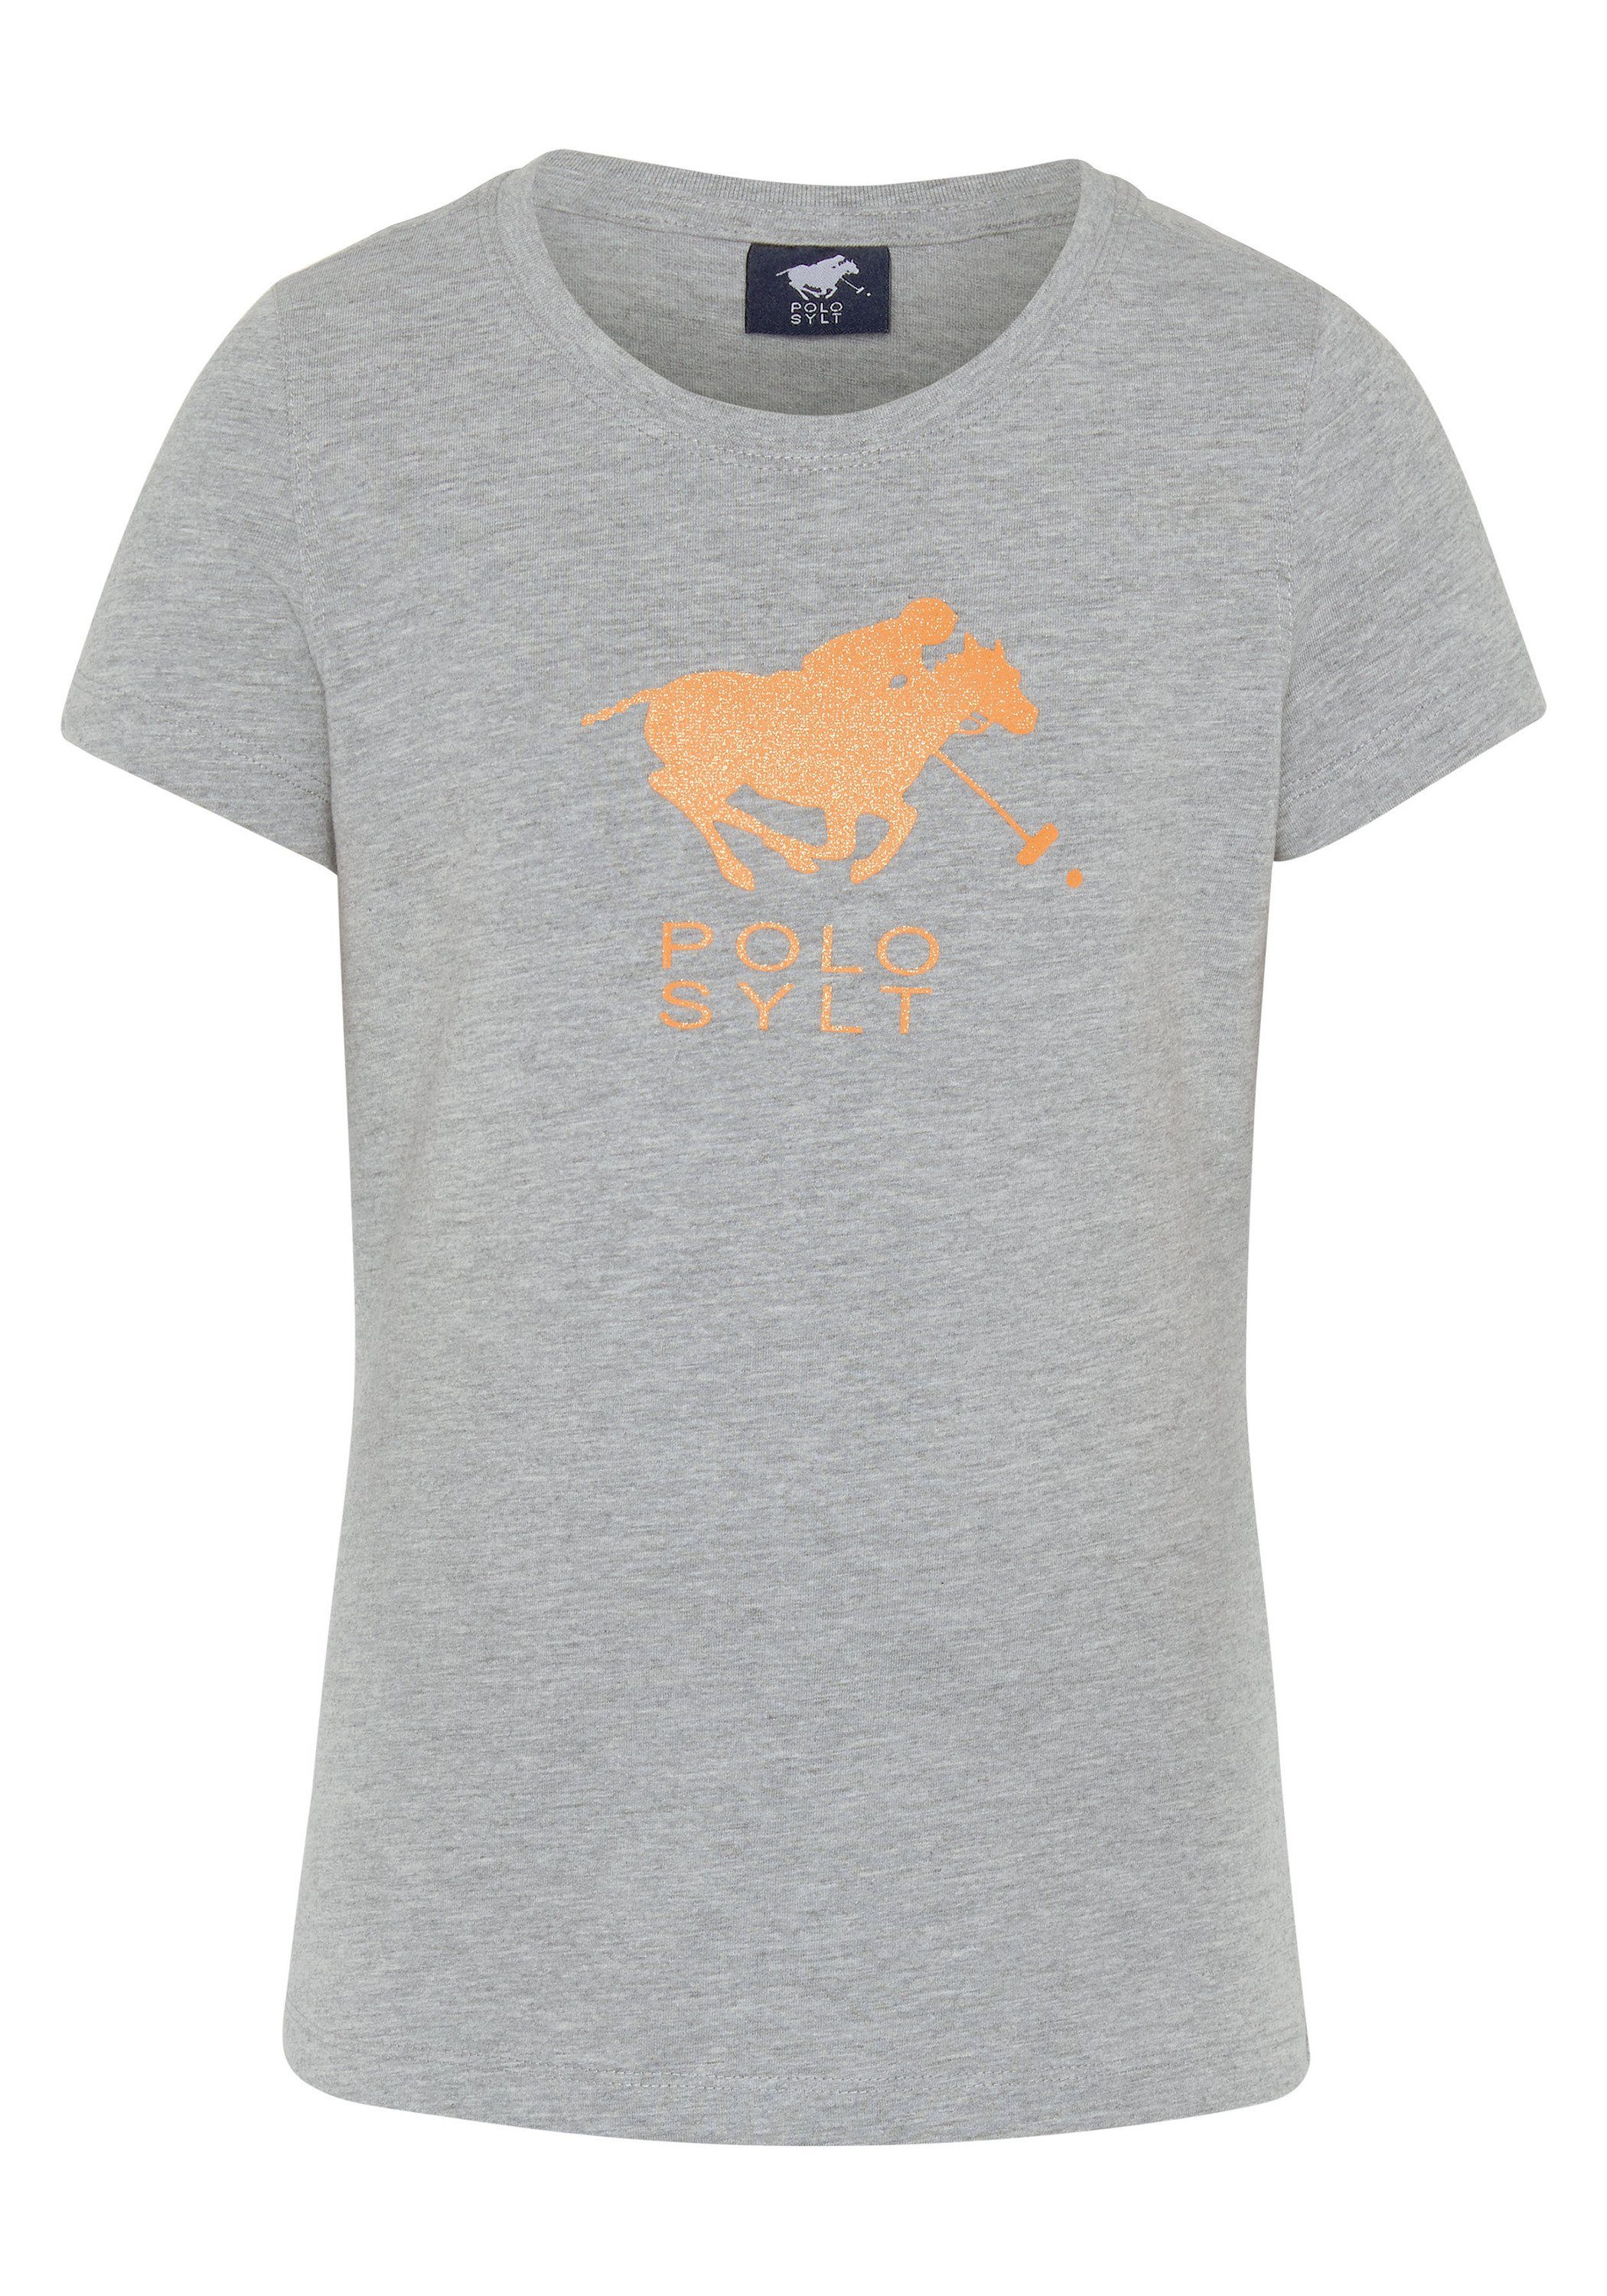 Polo Sylt Print-Shirt mit Glitzer-Logo Neutr. Gray